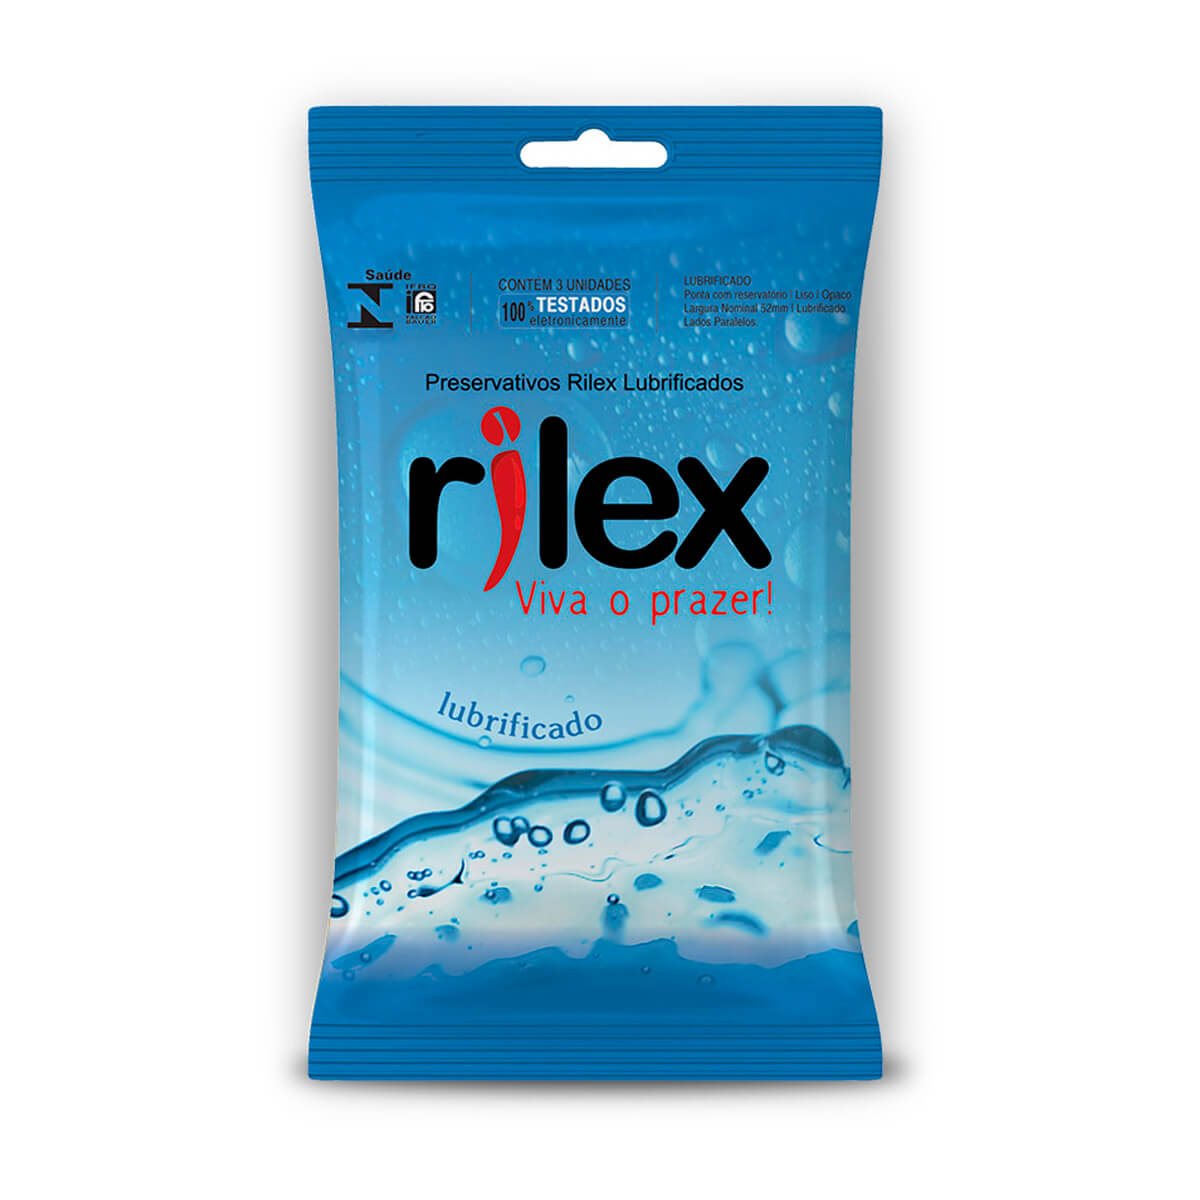 Preservativo Lubrificado 3 Unidades Rilex